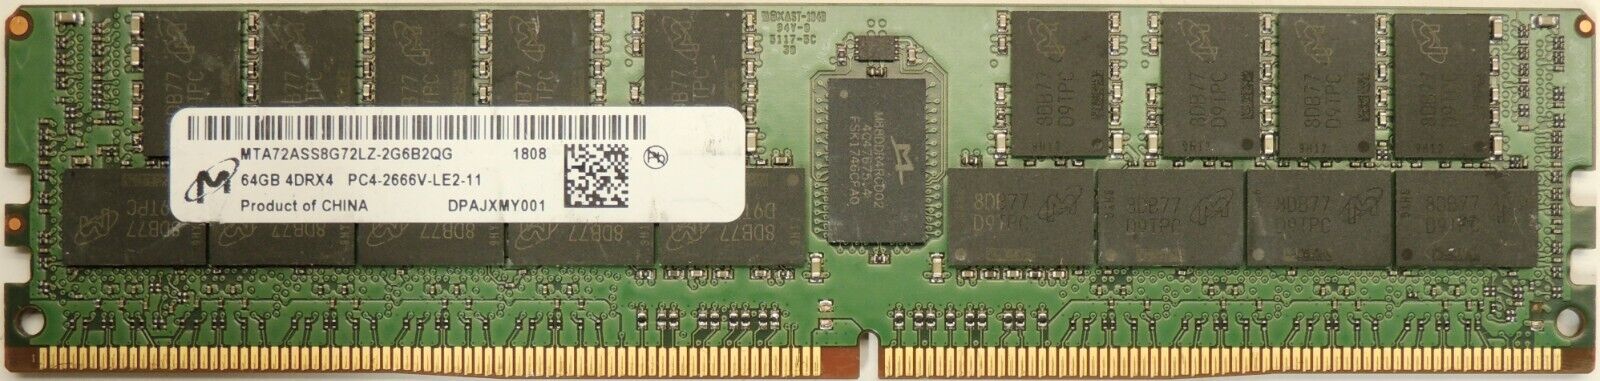 MICRON 64GB 4DRX4 PC4-2666V-LE2-11 SERVER RAM MTA72ASS8G72LZ-2G6D2QG 1.2V